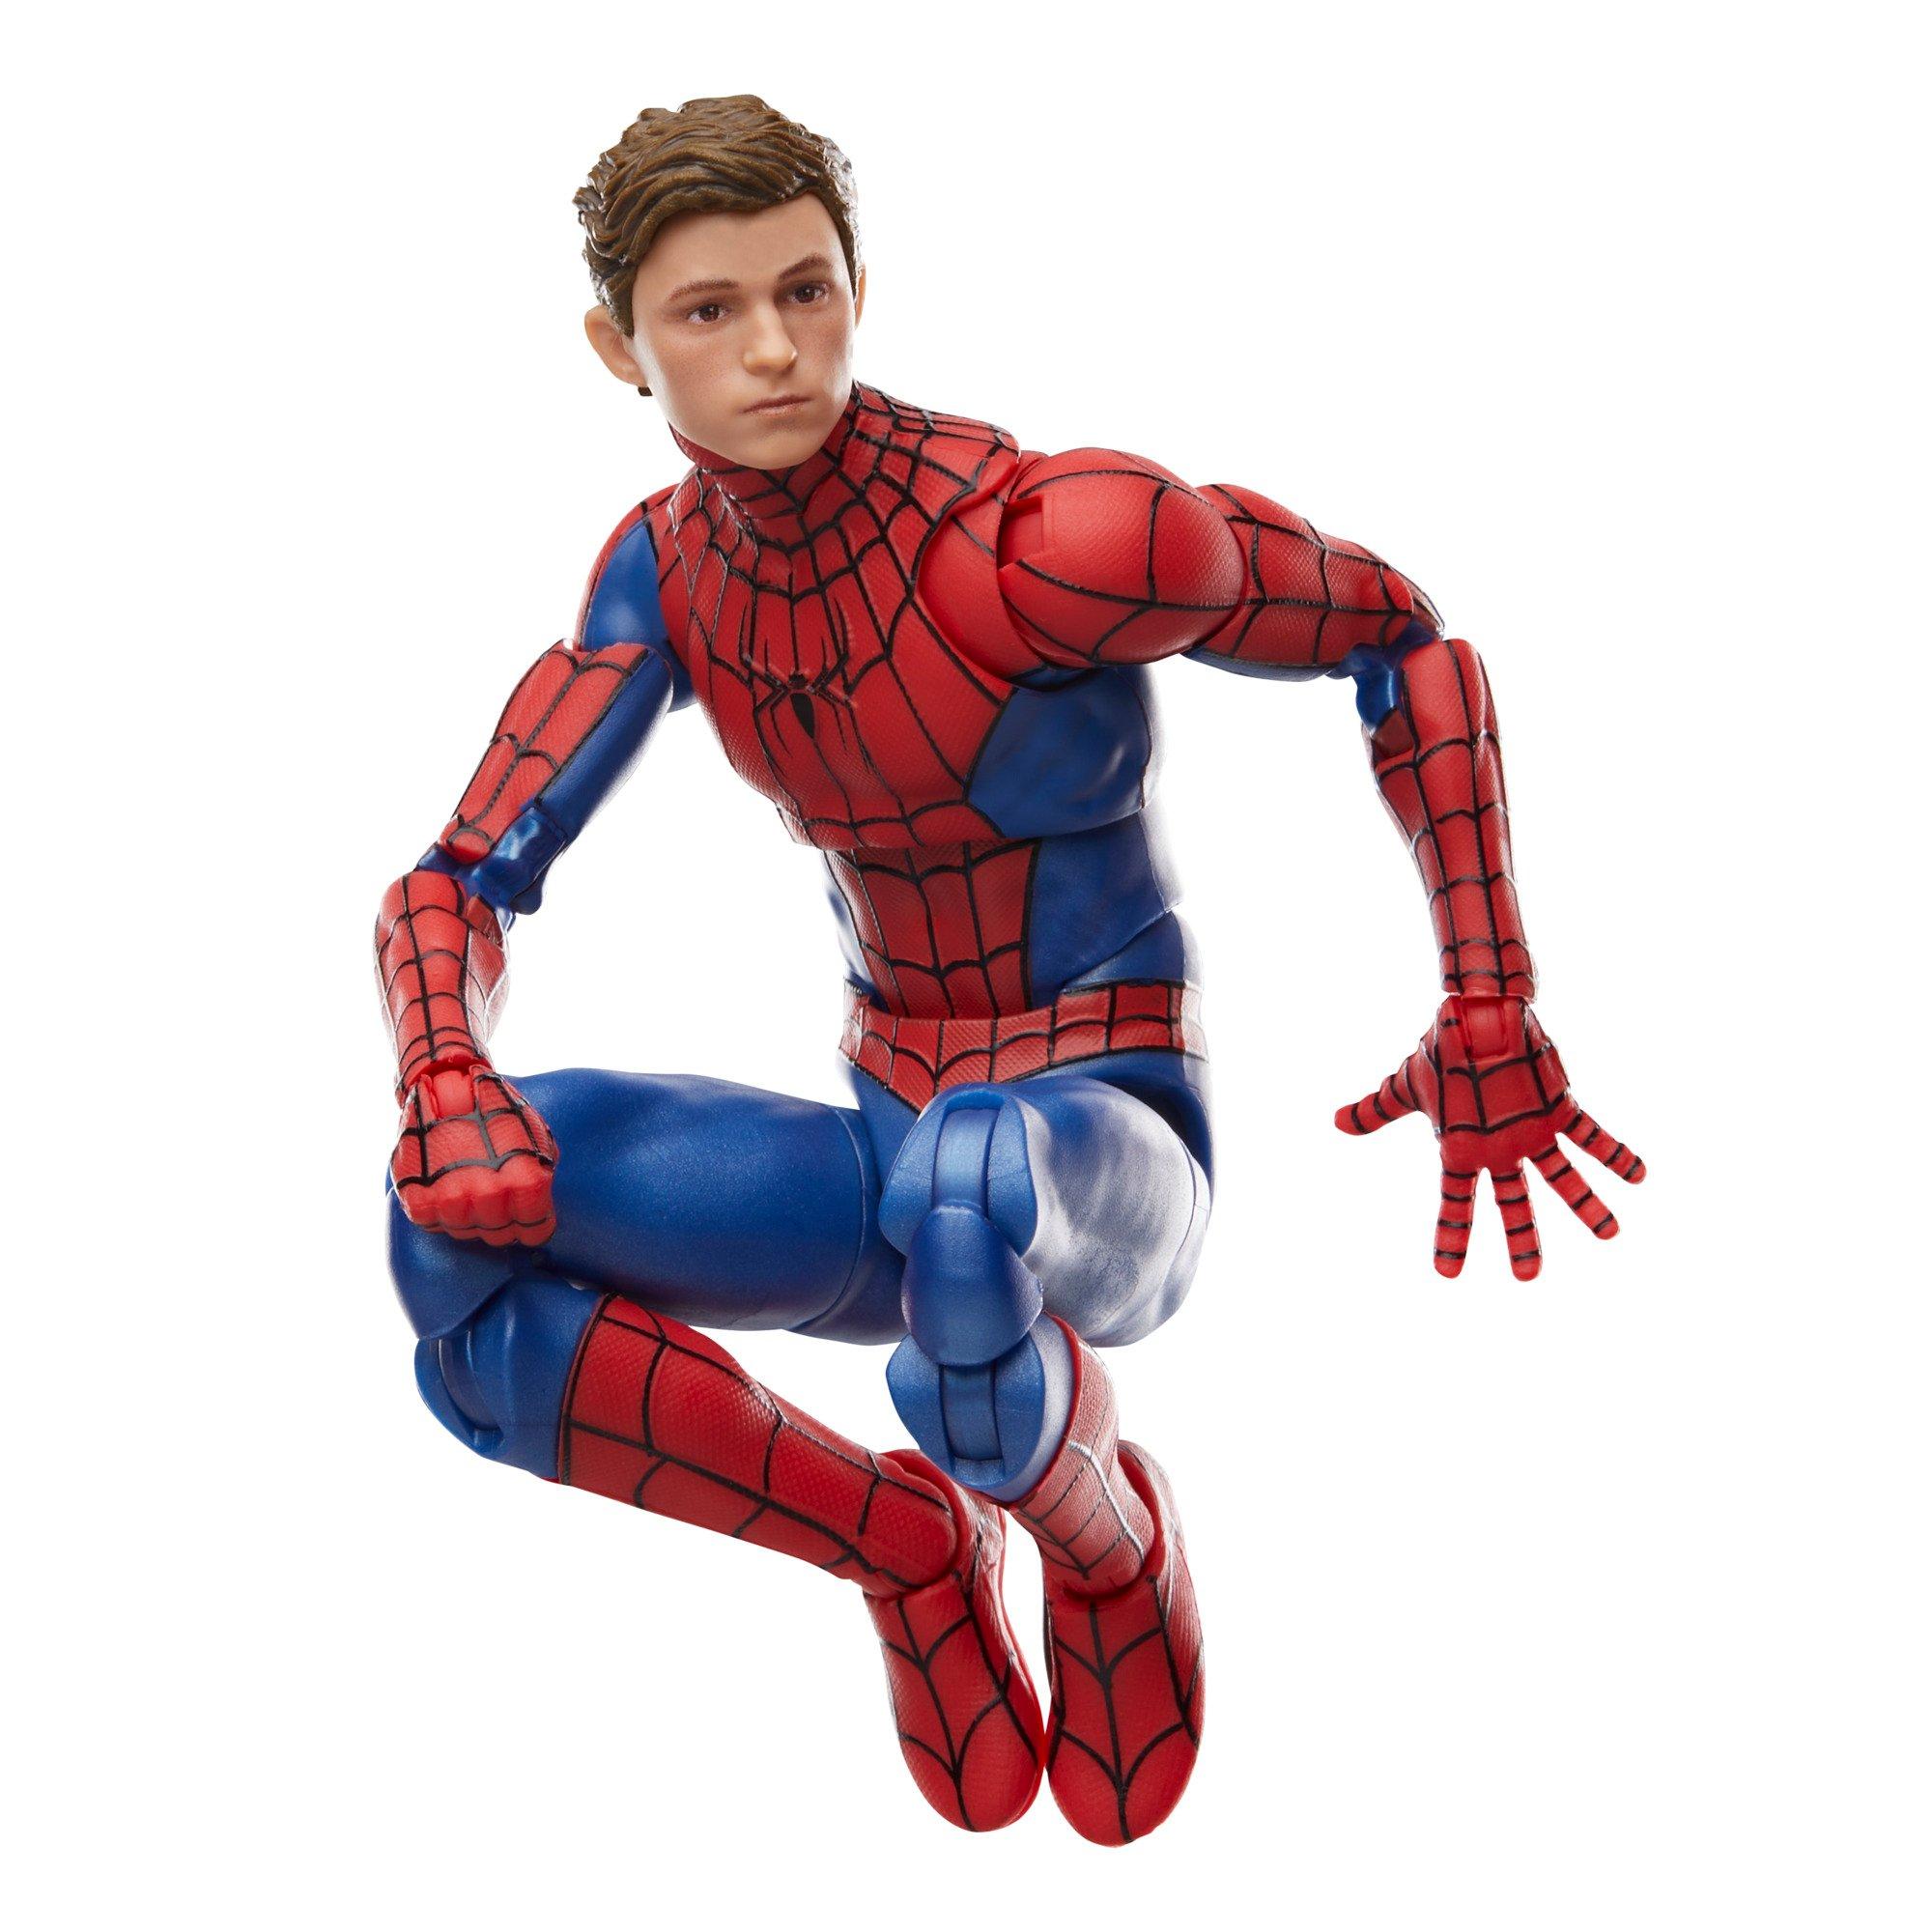 Hasbro Marvel Legends Spider-Man: No Way Home Doc Ock 6-in Action Figure |  GameStop